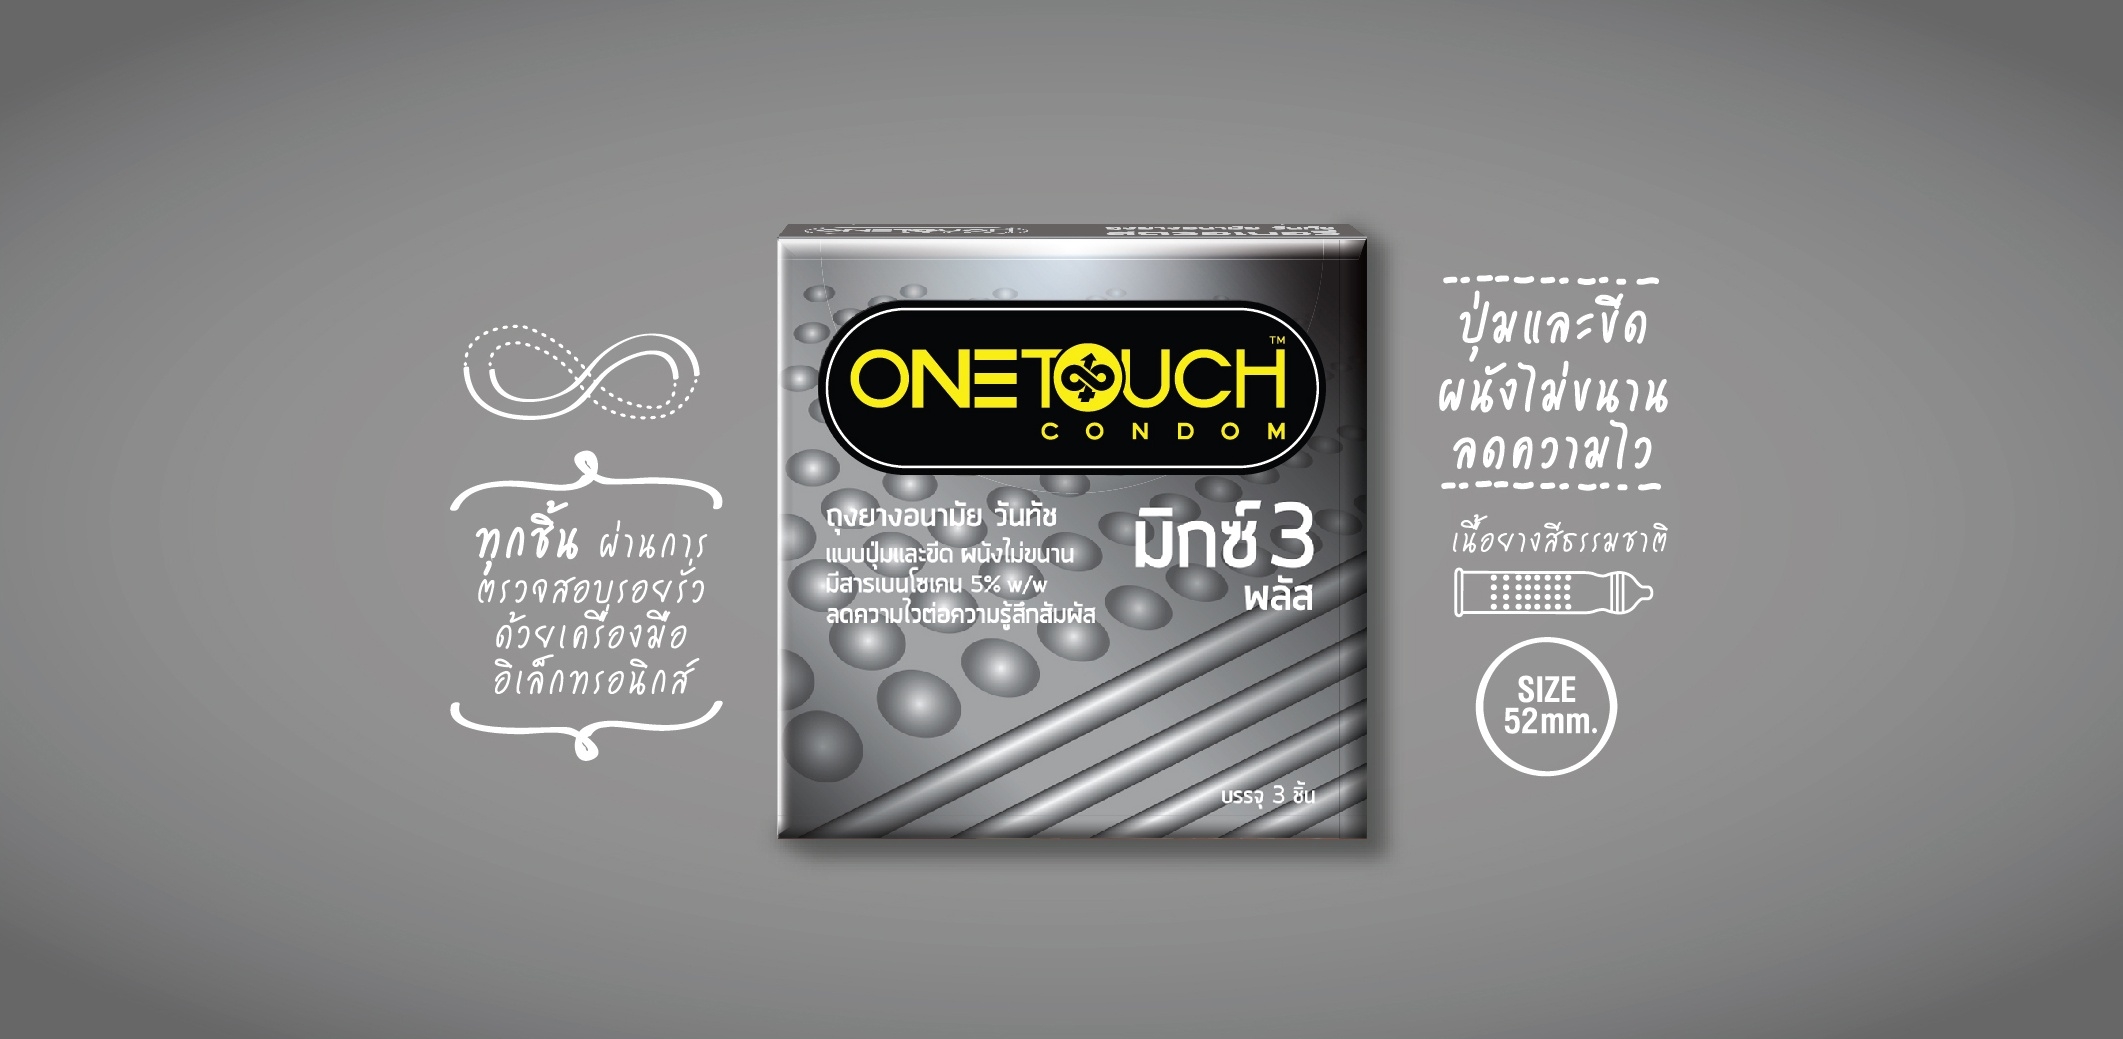 ถุงยางอนามัย One Touch Mixx 3 (ปุ่มและขีด)